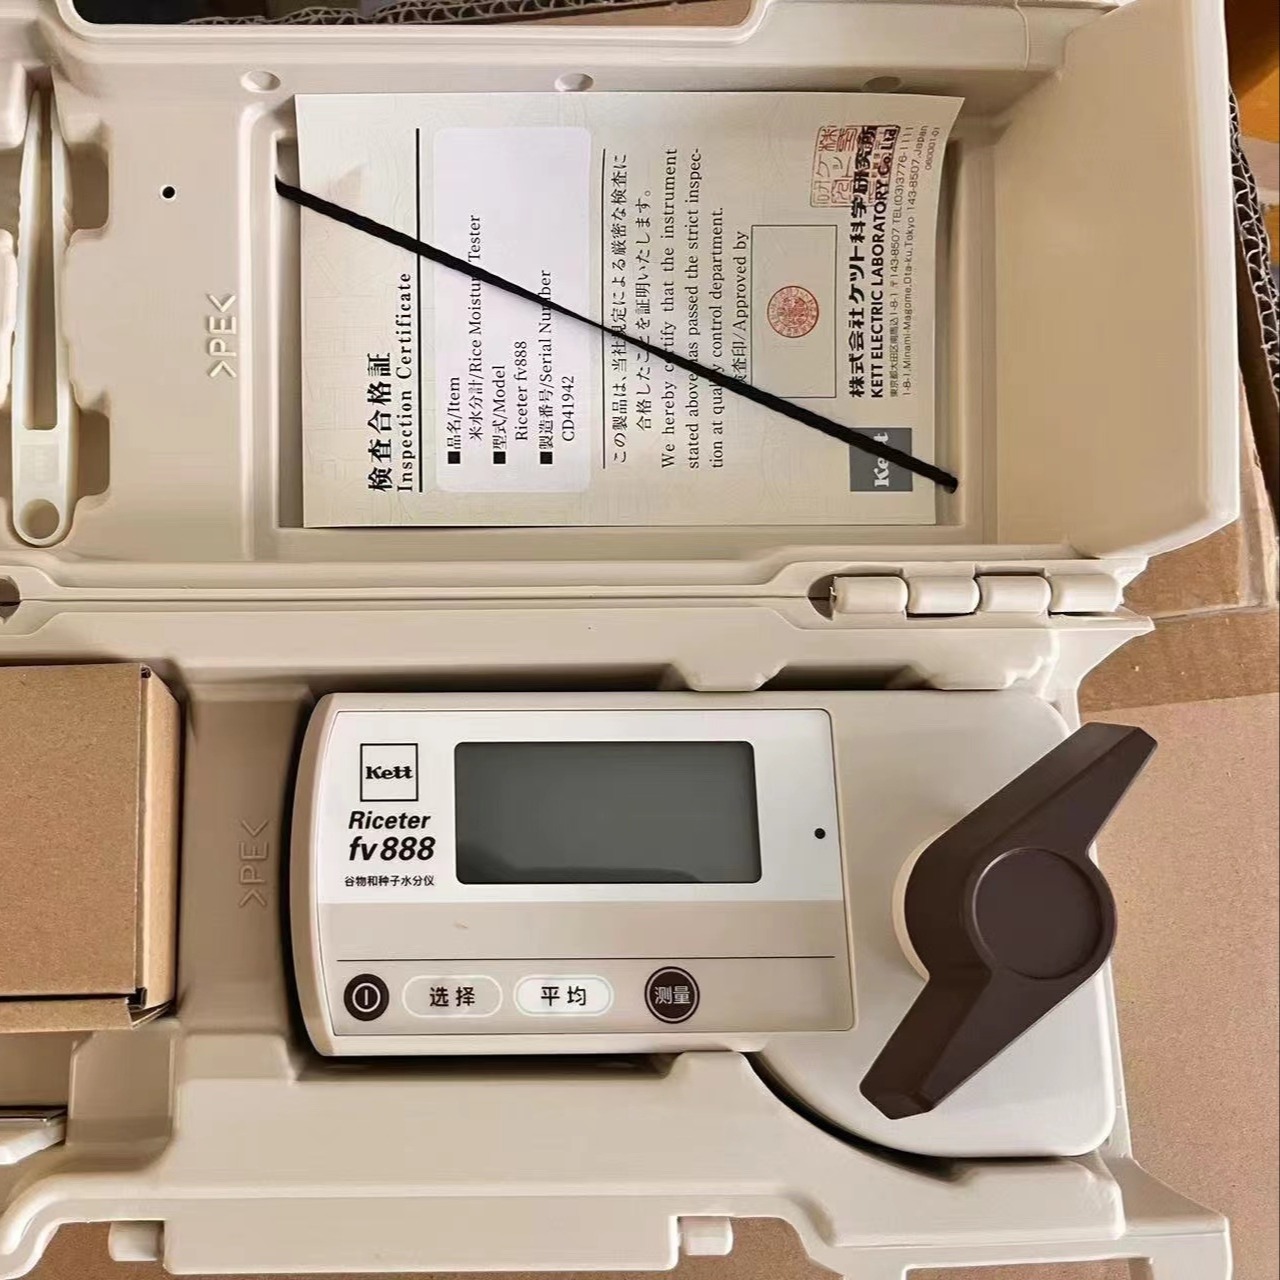 日本KETT谷物种子水分仪RICETR FV888谷物稻谷种子水分计水分测试仪湿度测试仪